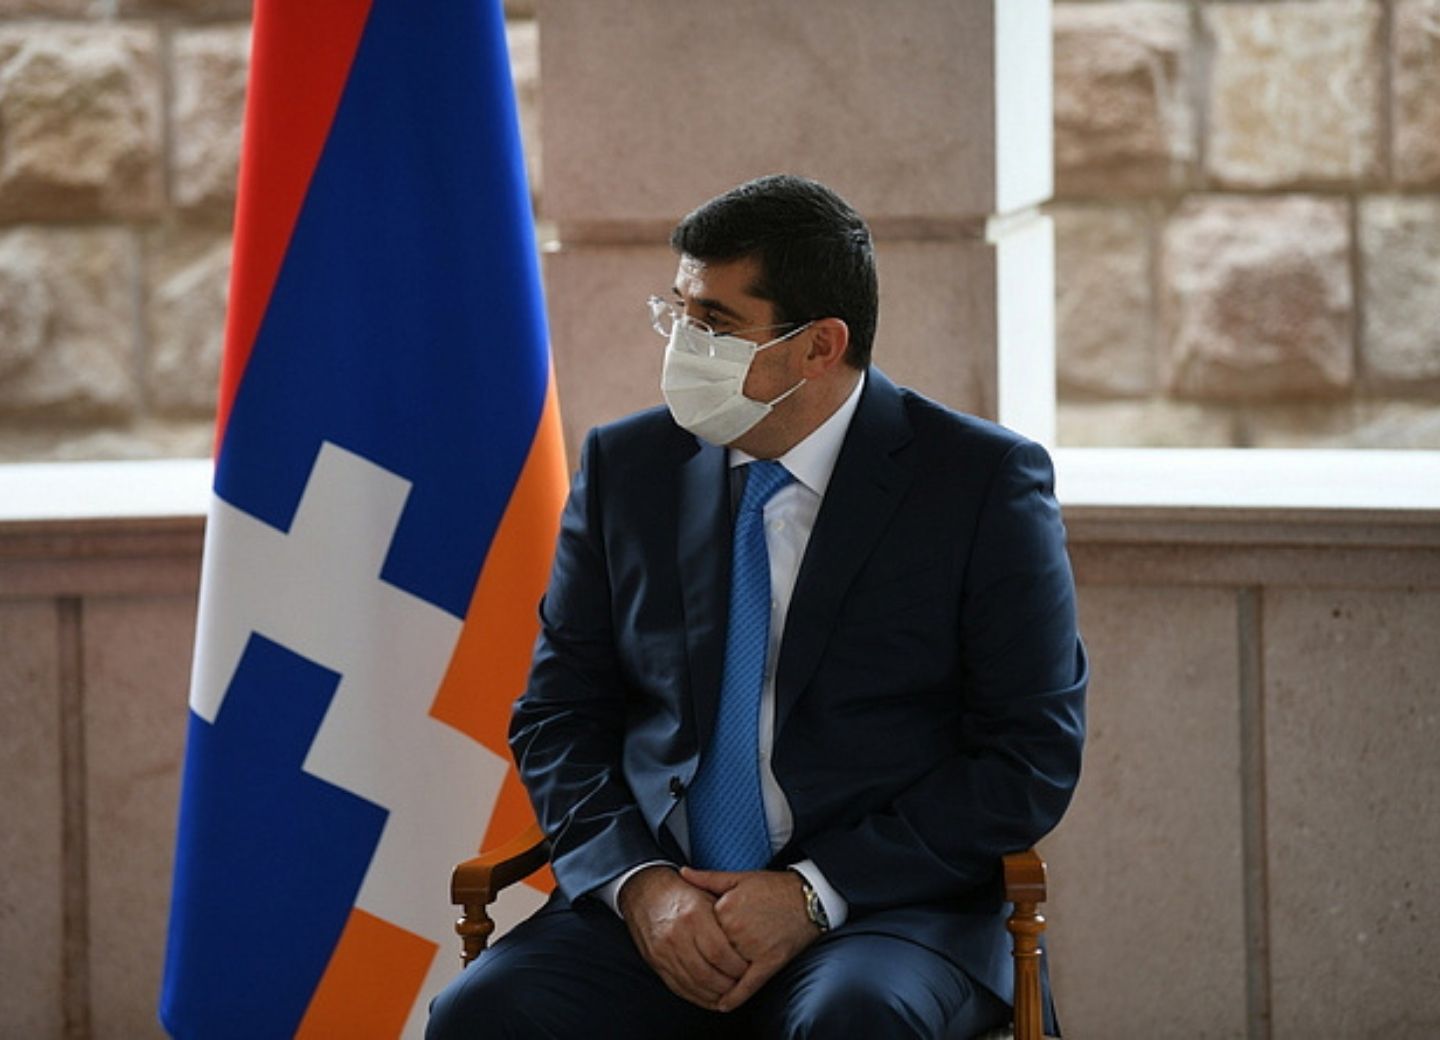 Сепаратисты Нагорного Карабаха заявили о желании войти в состав Армении. Что это значит?